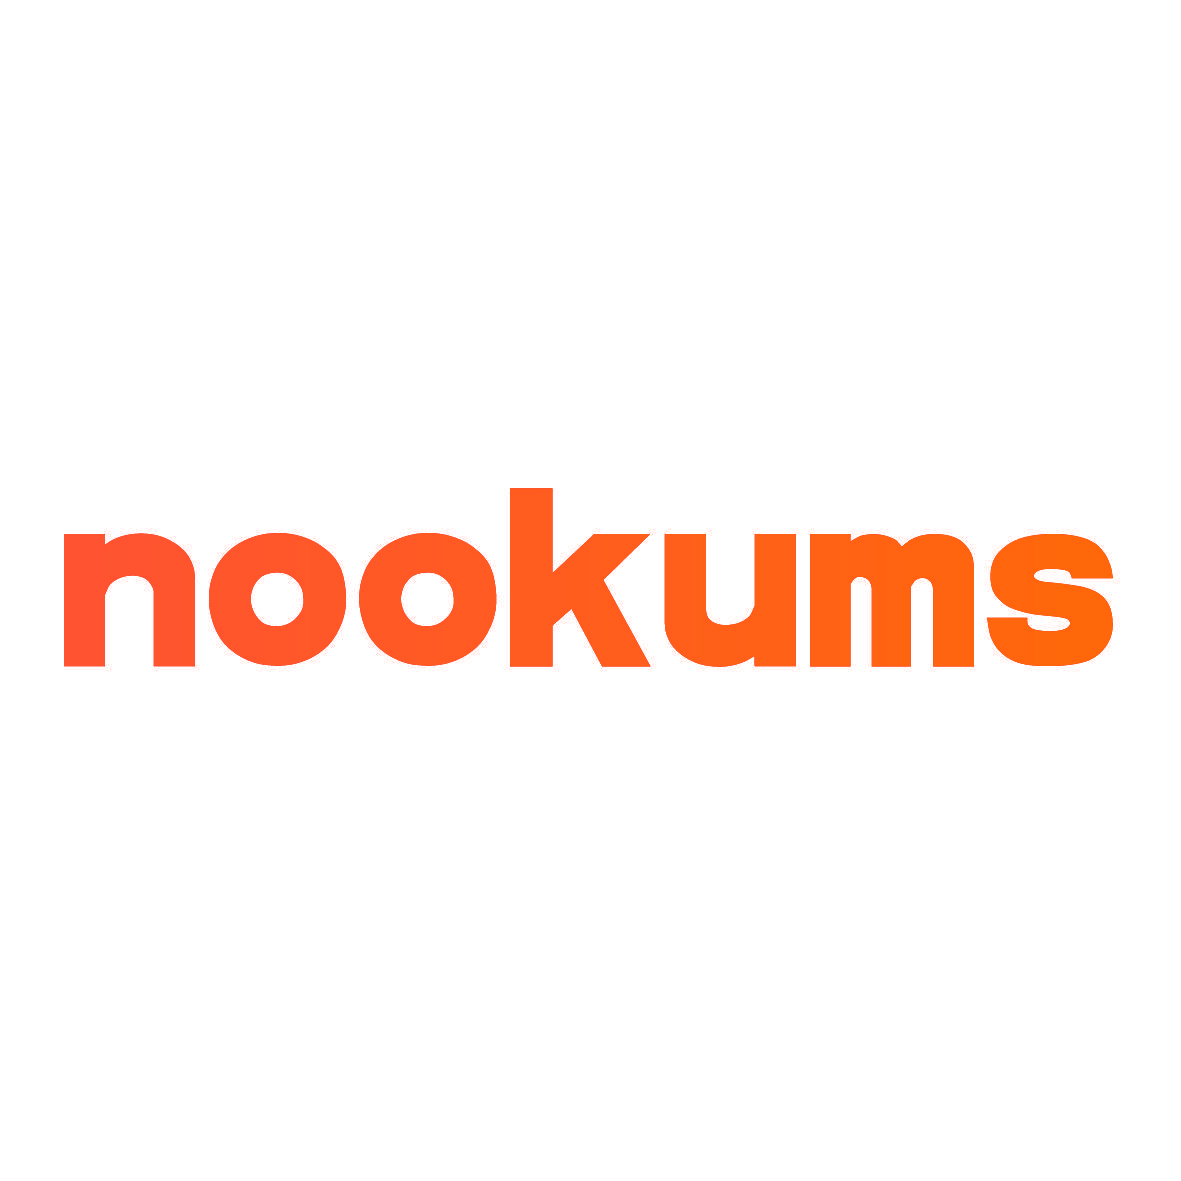 NOOKUMS